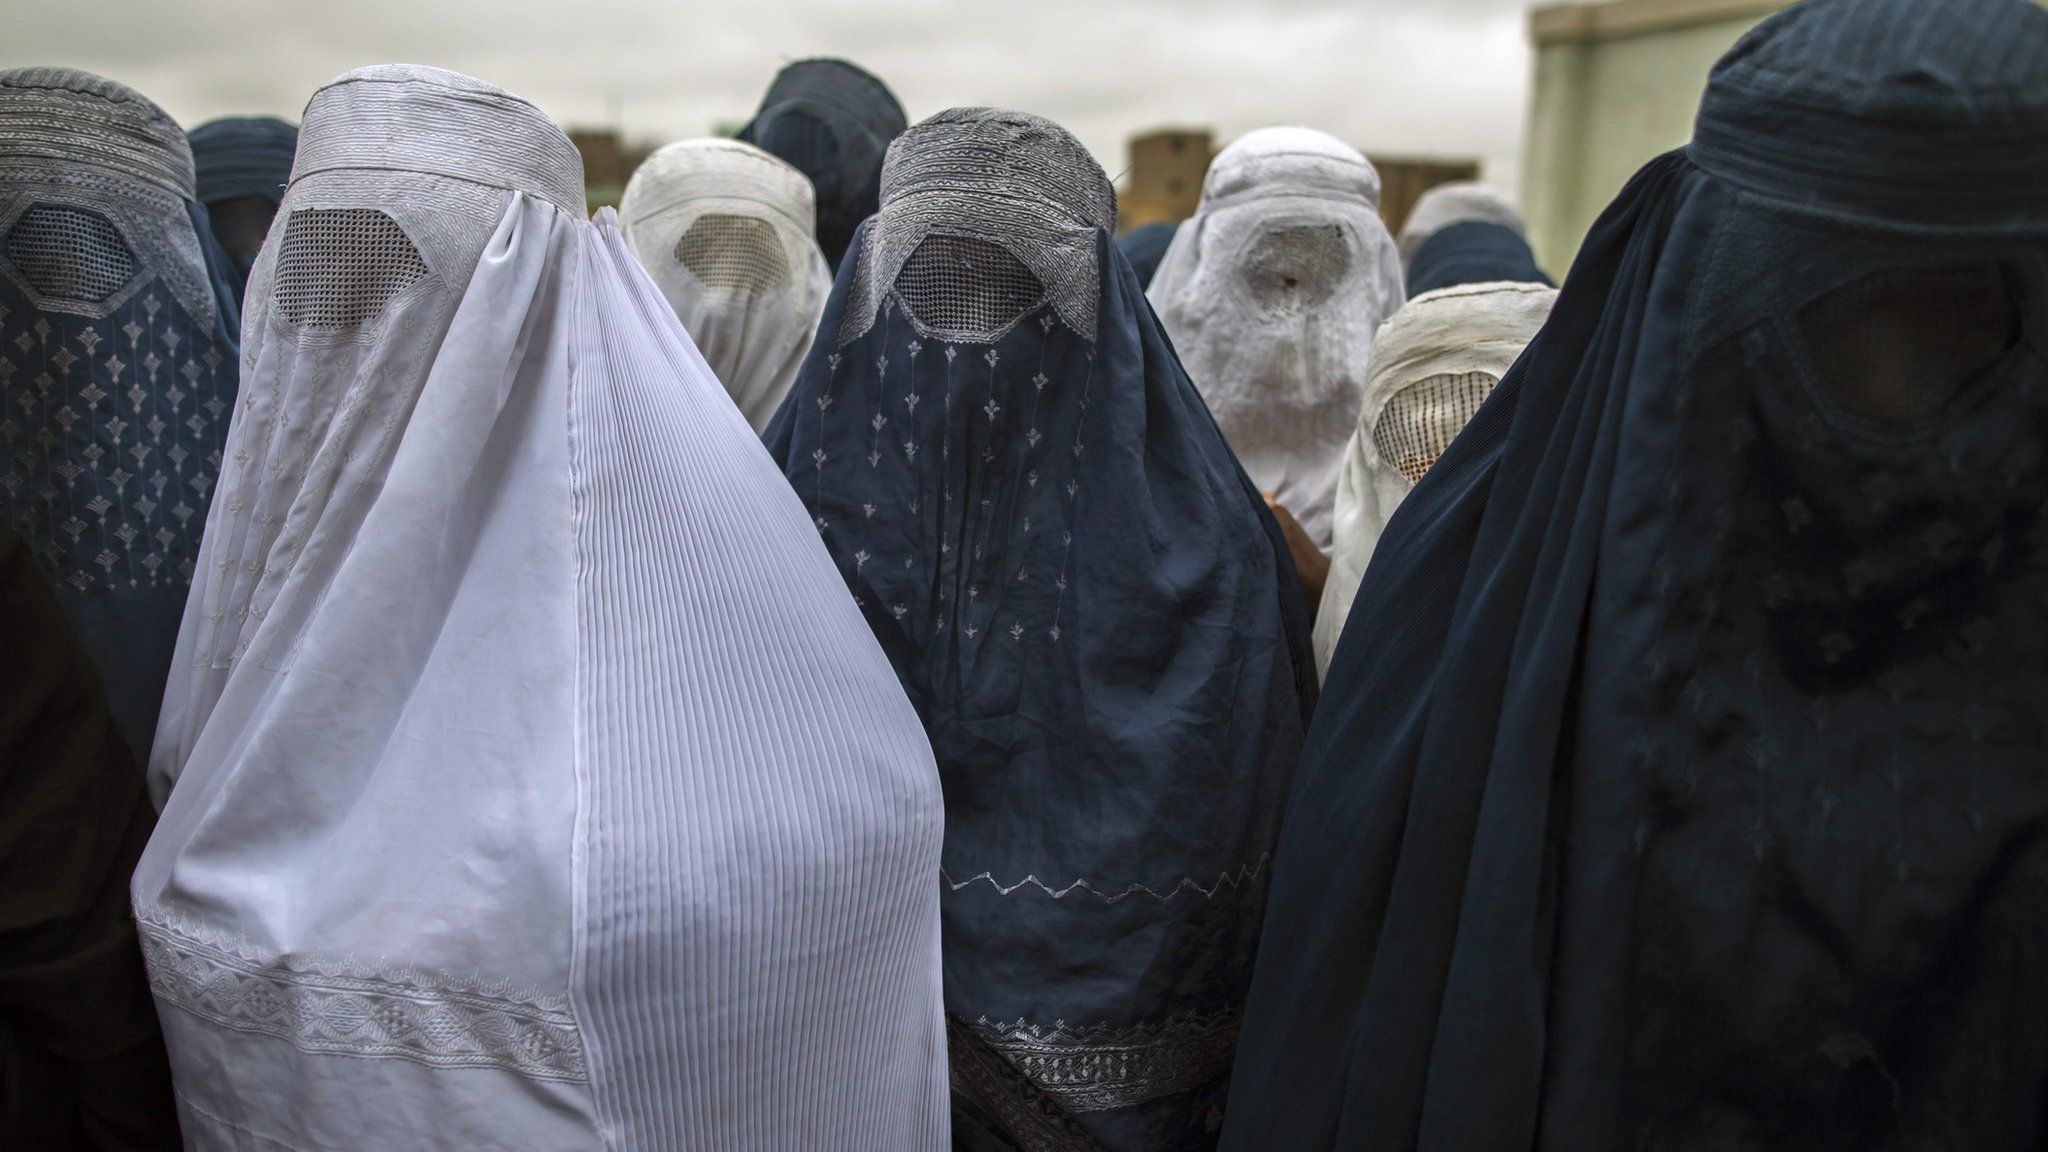 Afghan women wearing Burqas